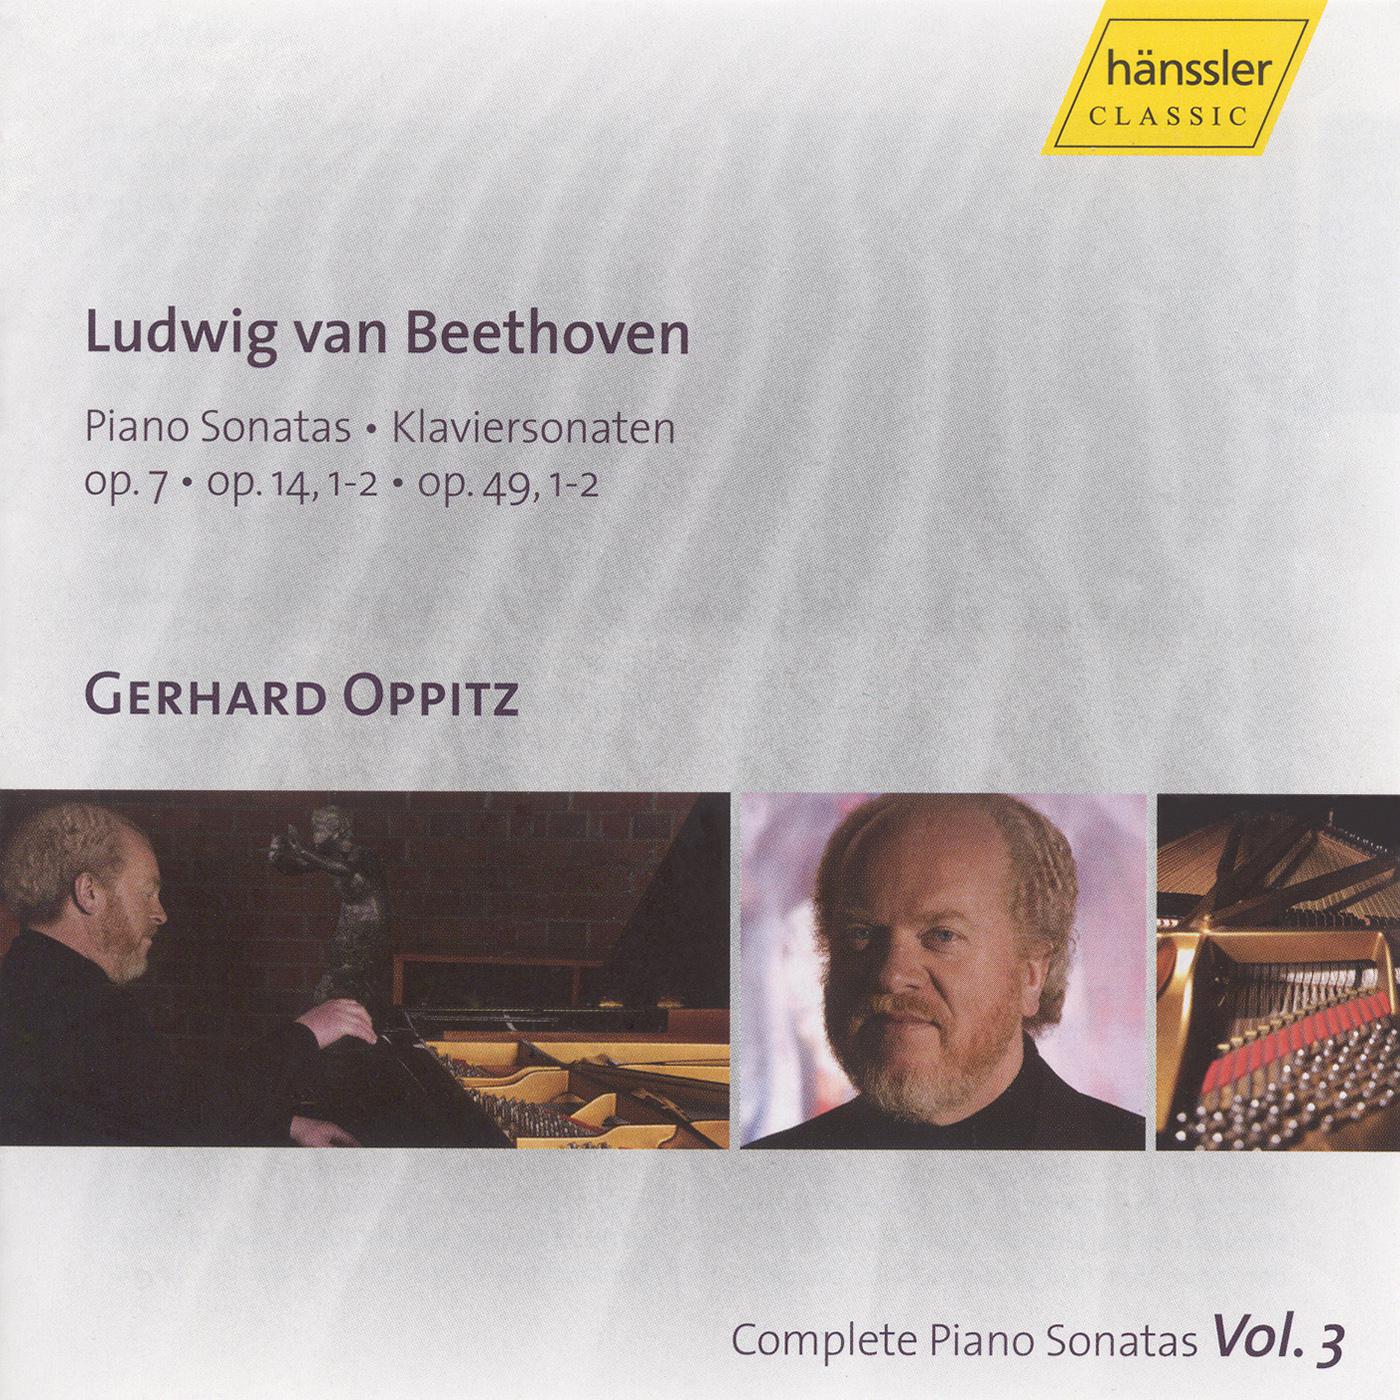 BEETHOVEN, L.: Piano Sonatas, Vol. 3 (Oppitz) - Nos. 4, 9, 10, 19, 20